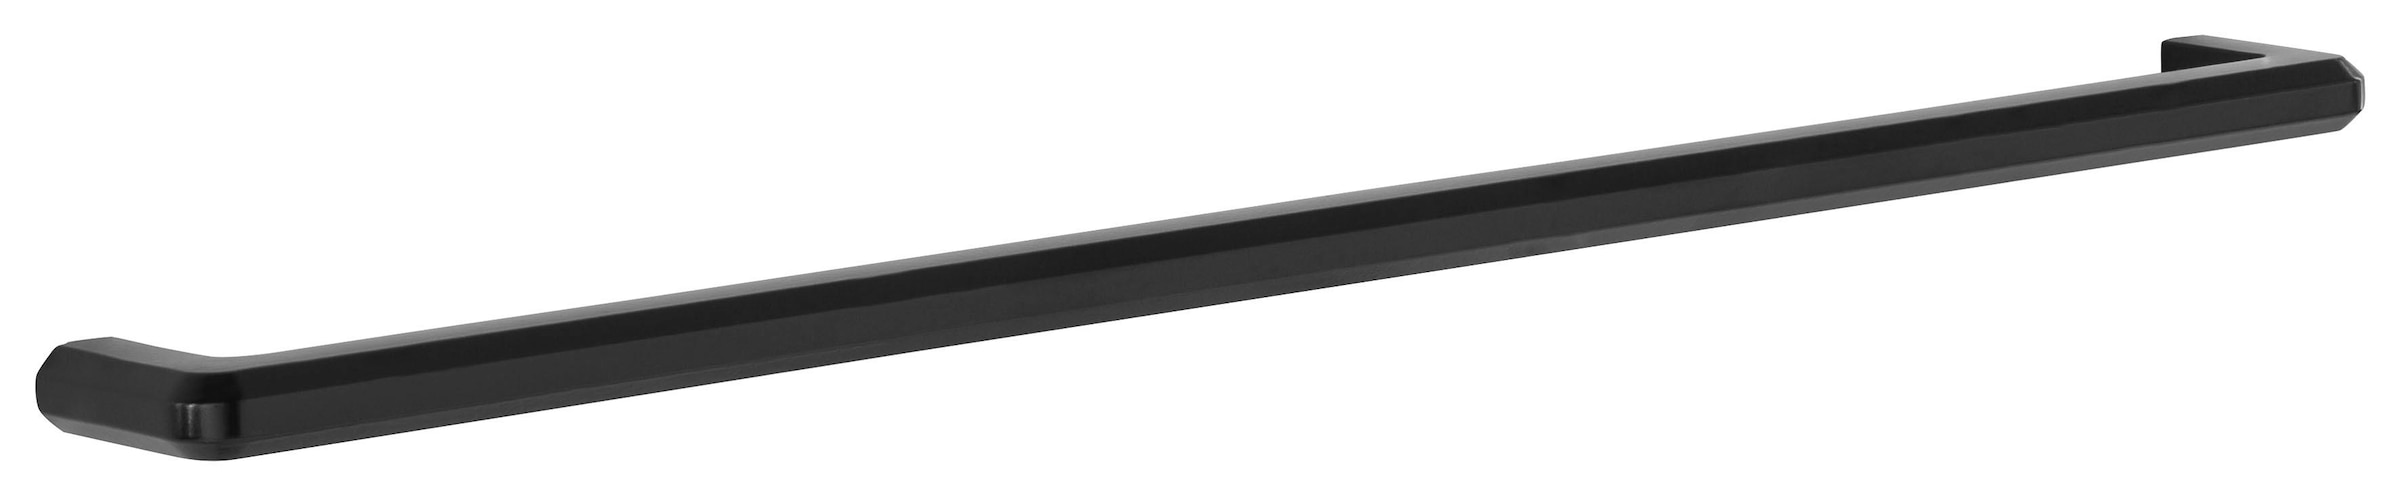 HELD MÖBEL Klapphängeschrank »Tulsa«, 50 cm breit, mit 1 Klappe, schwarzer  Metallgriff, MDF Front auf Rechnung kaufen